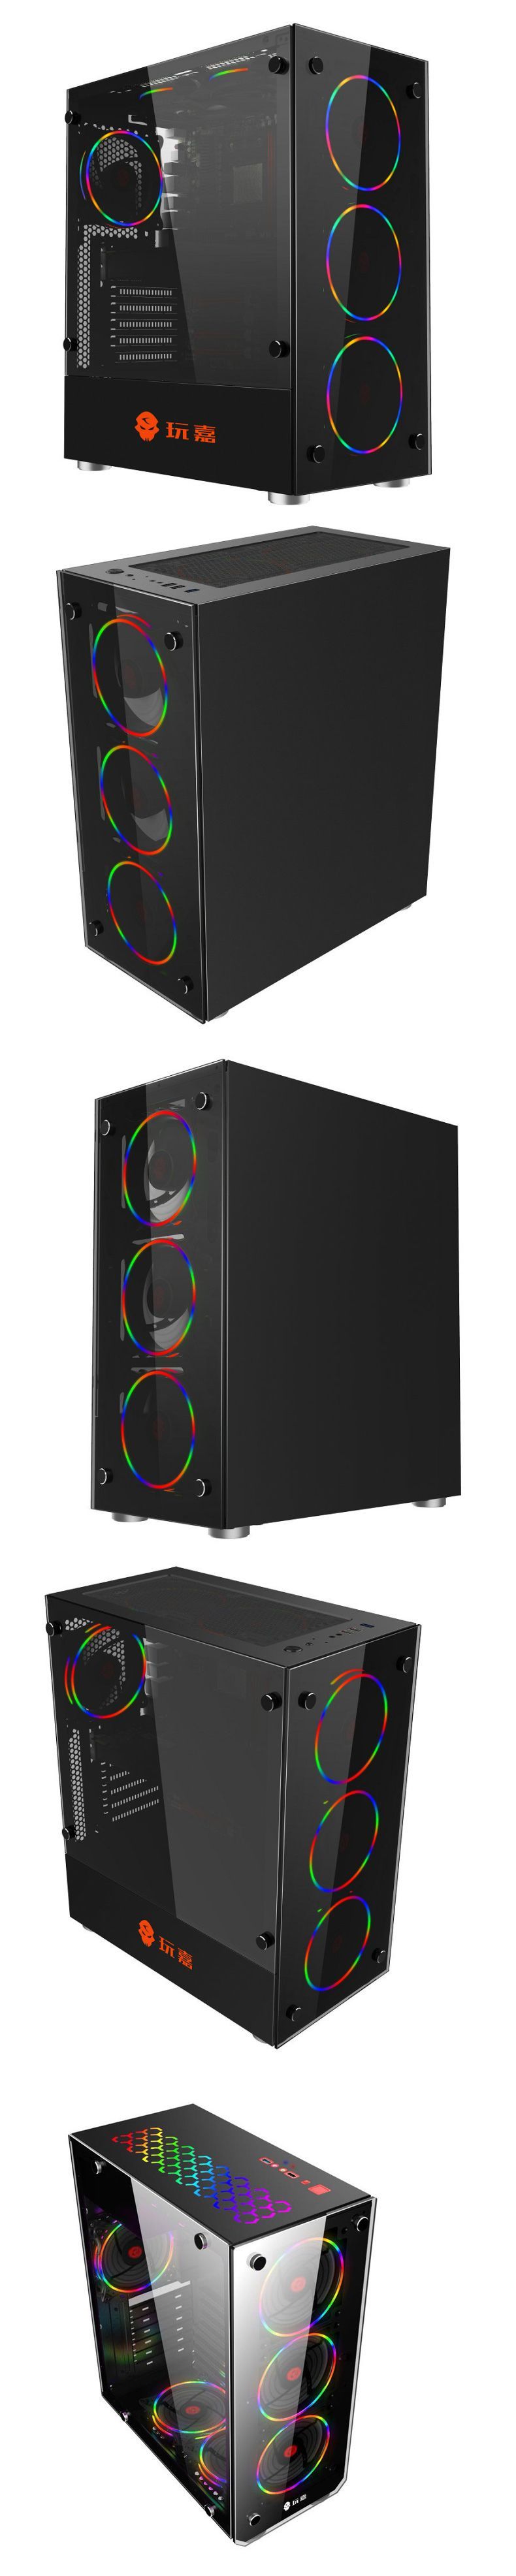 COOLMOON-Neon-Desktop-Computer-Case-Fan-12cm-RGB-Rainbow-Color-LED-Light-Laptop-PC-Case-Cooling-Fan--1657278